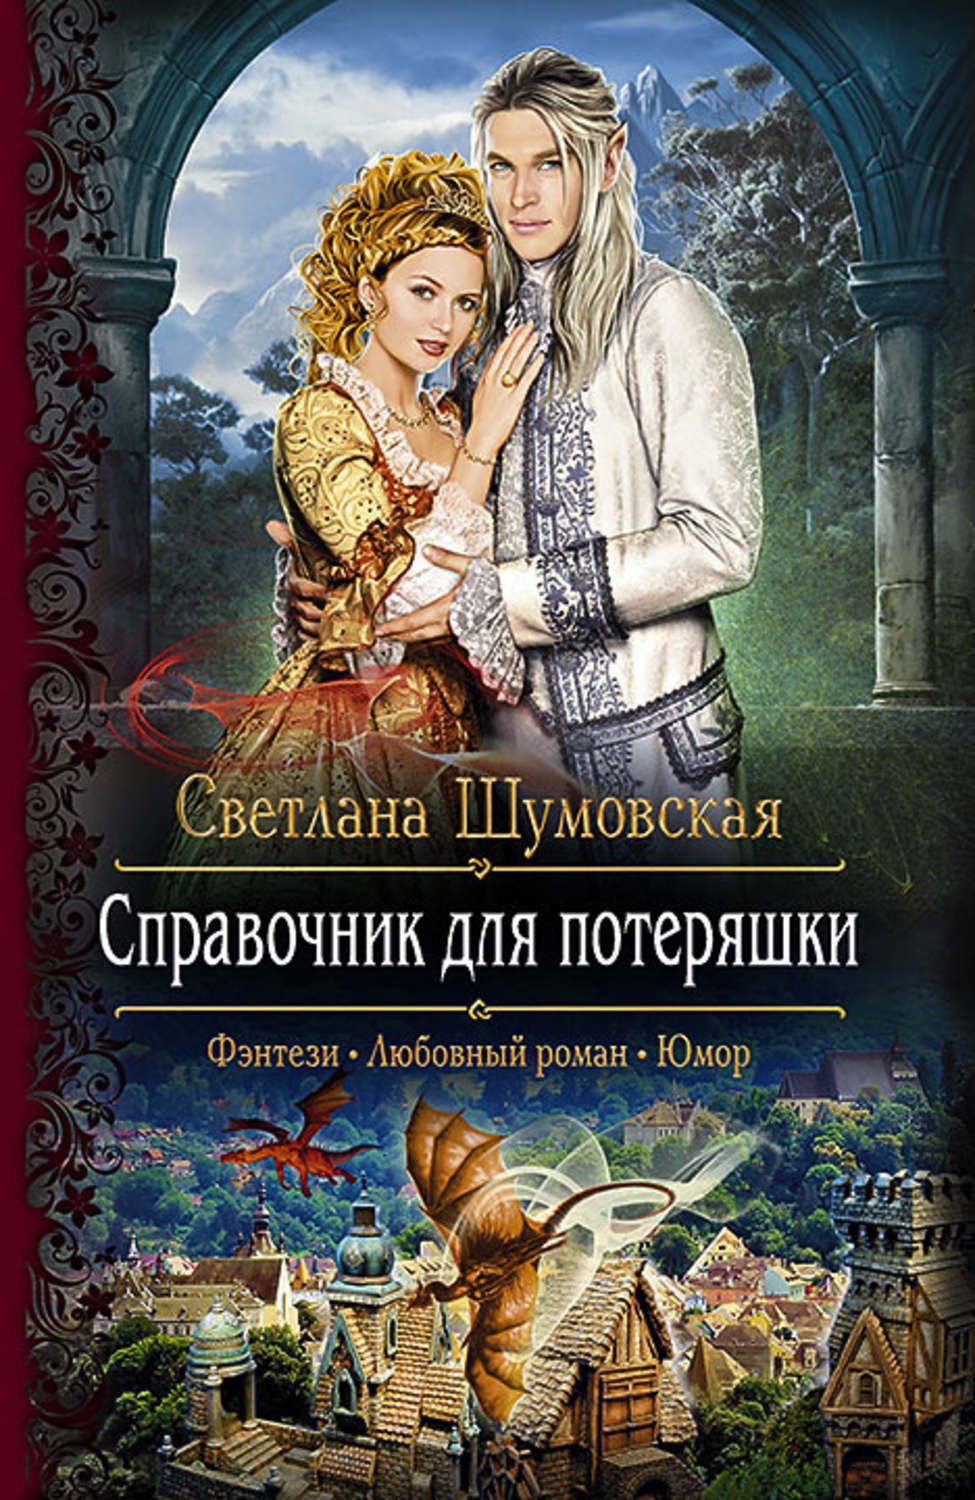 Взрывная натура Екатерина Богданова книга